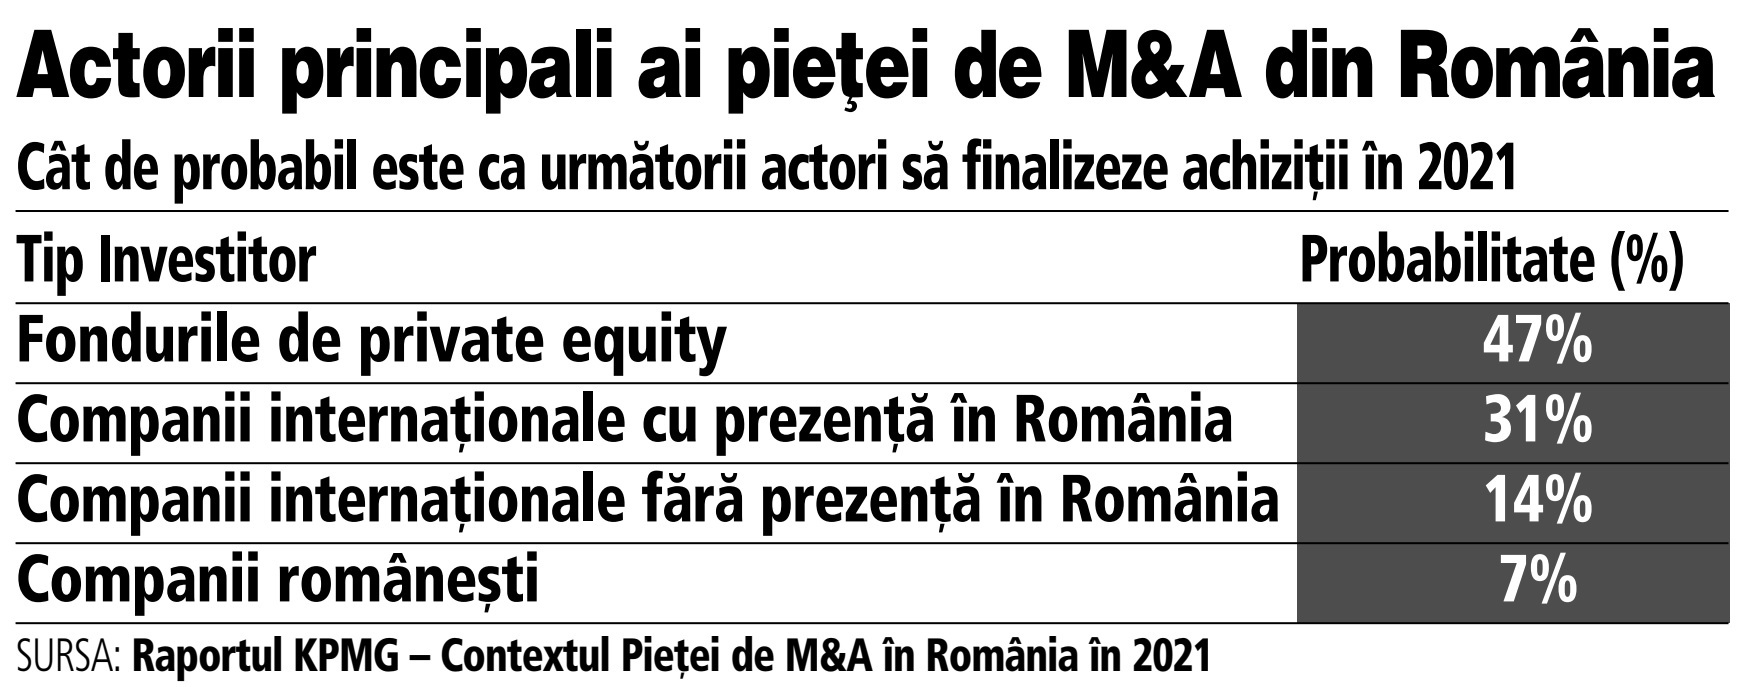 KPMG: Piaţa locală e atractivă pentru fondurile de investiţii. Pe măsură ce România îşi revine după pandemie, investitorii caută oportunităţi de tranzacţionare